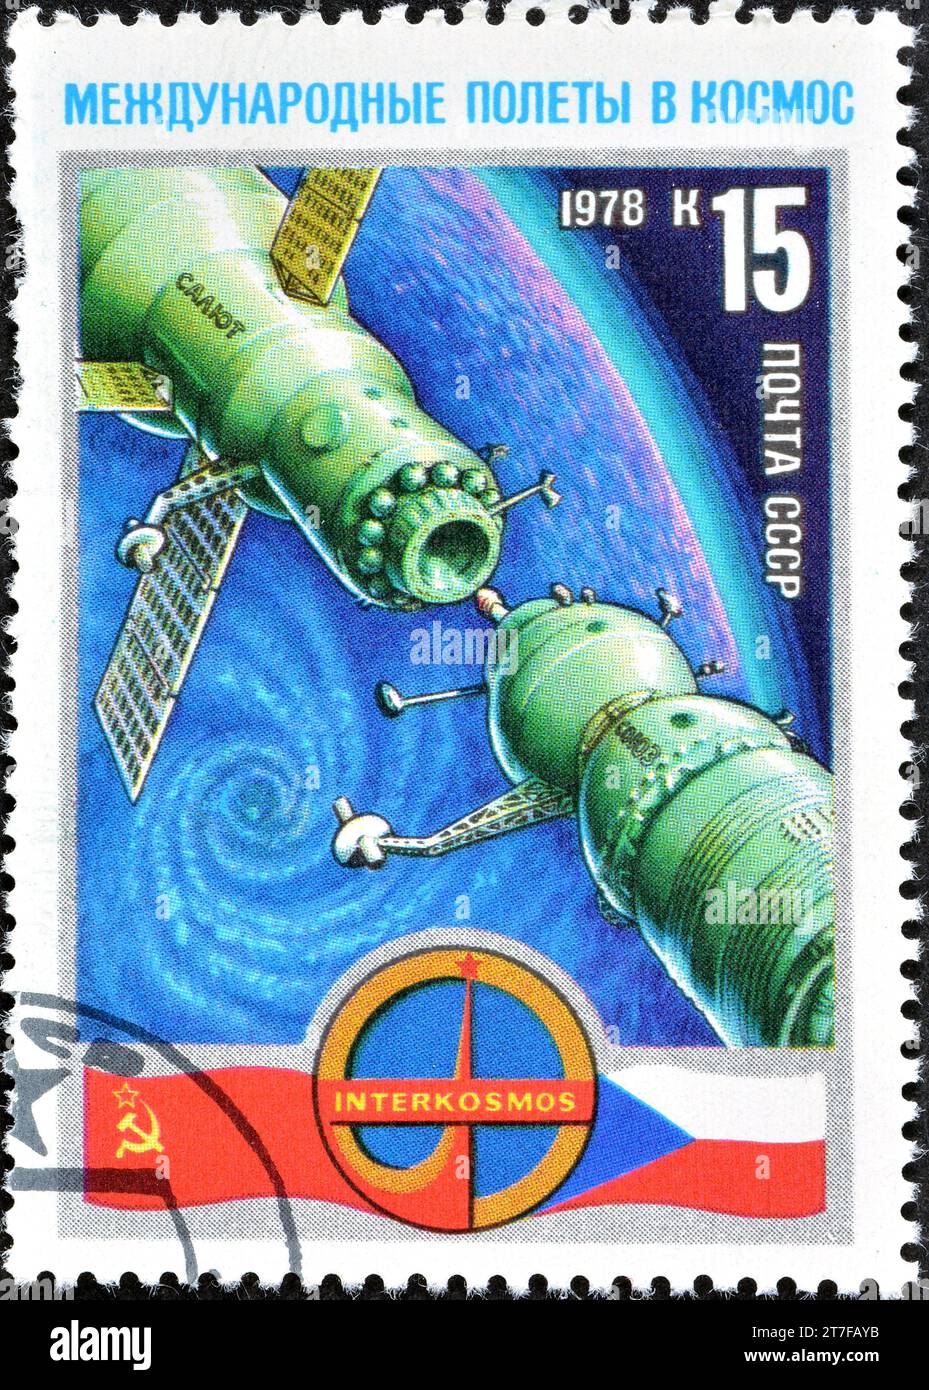 Francobollo cancellato stampato dall'Unione Sovietica, che mostra l'attracco Di S'Soyuz-28' con la stazione spaziale 'Salyut-6', Interkosmos - volo spaziale sovietico-ceco Foto Stock